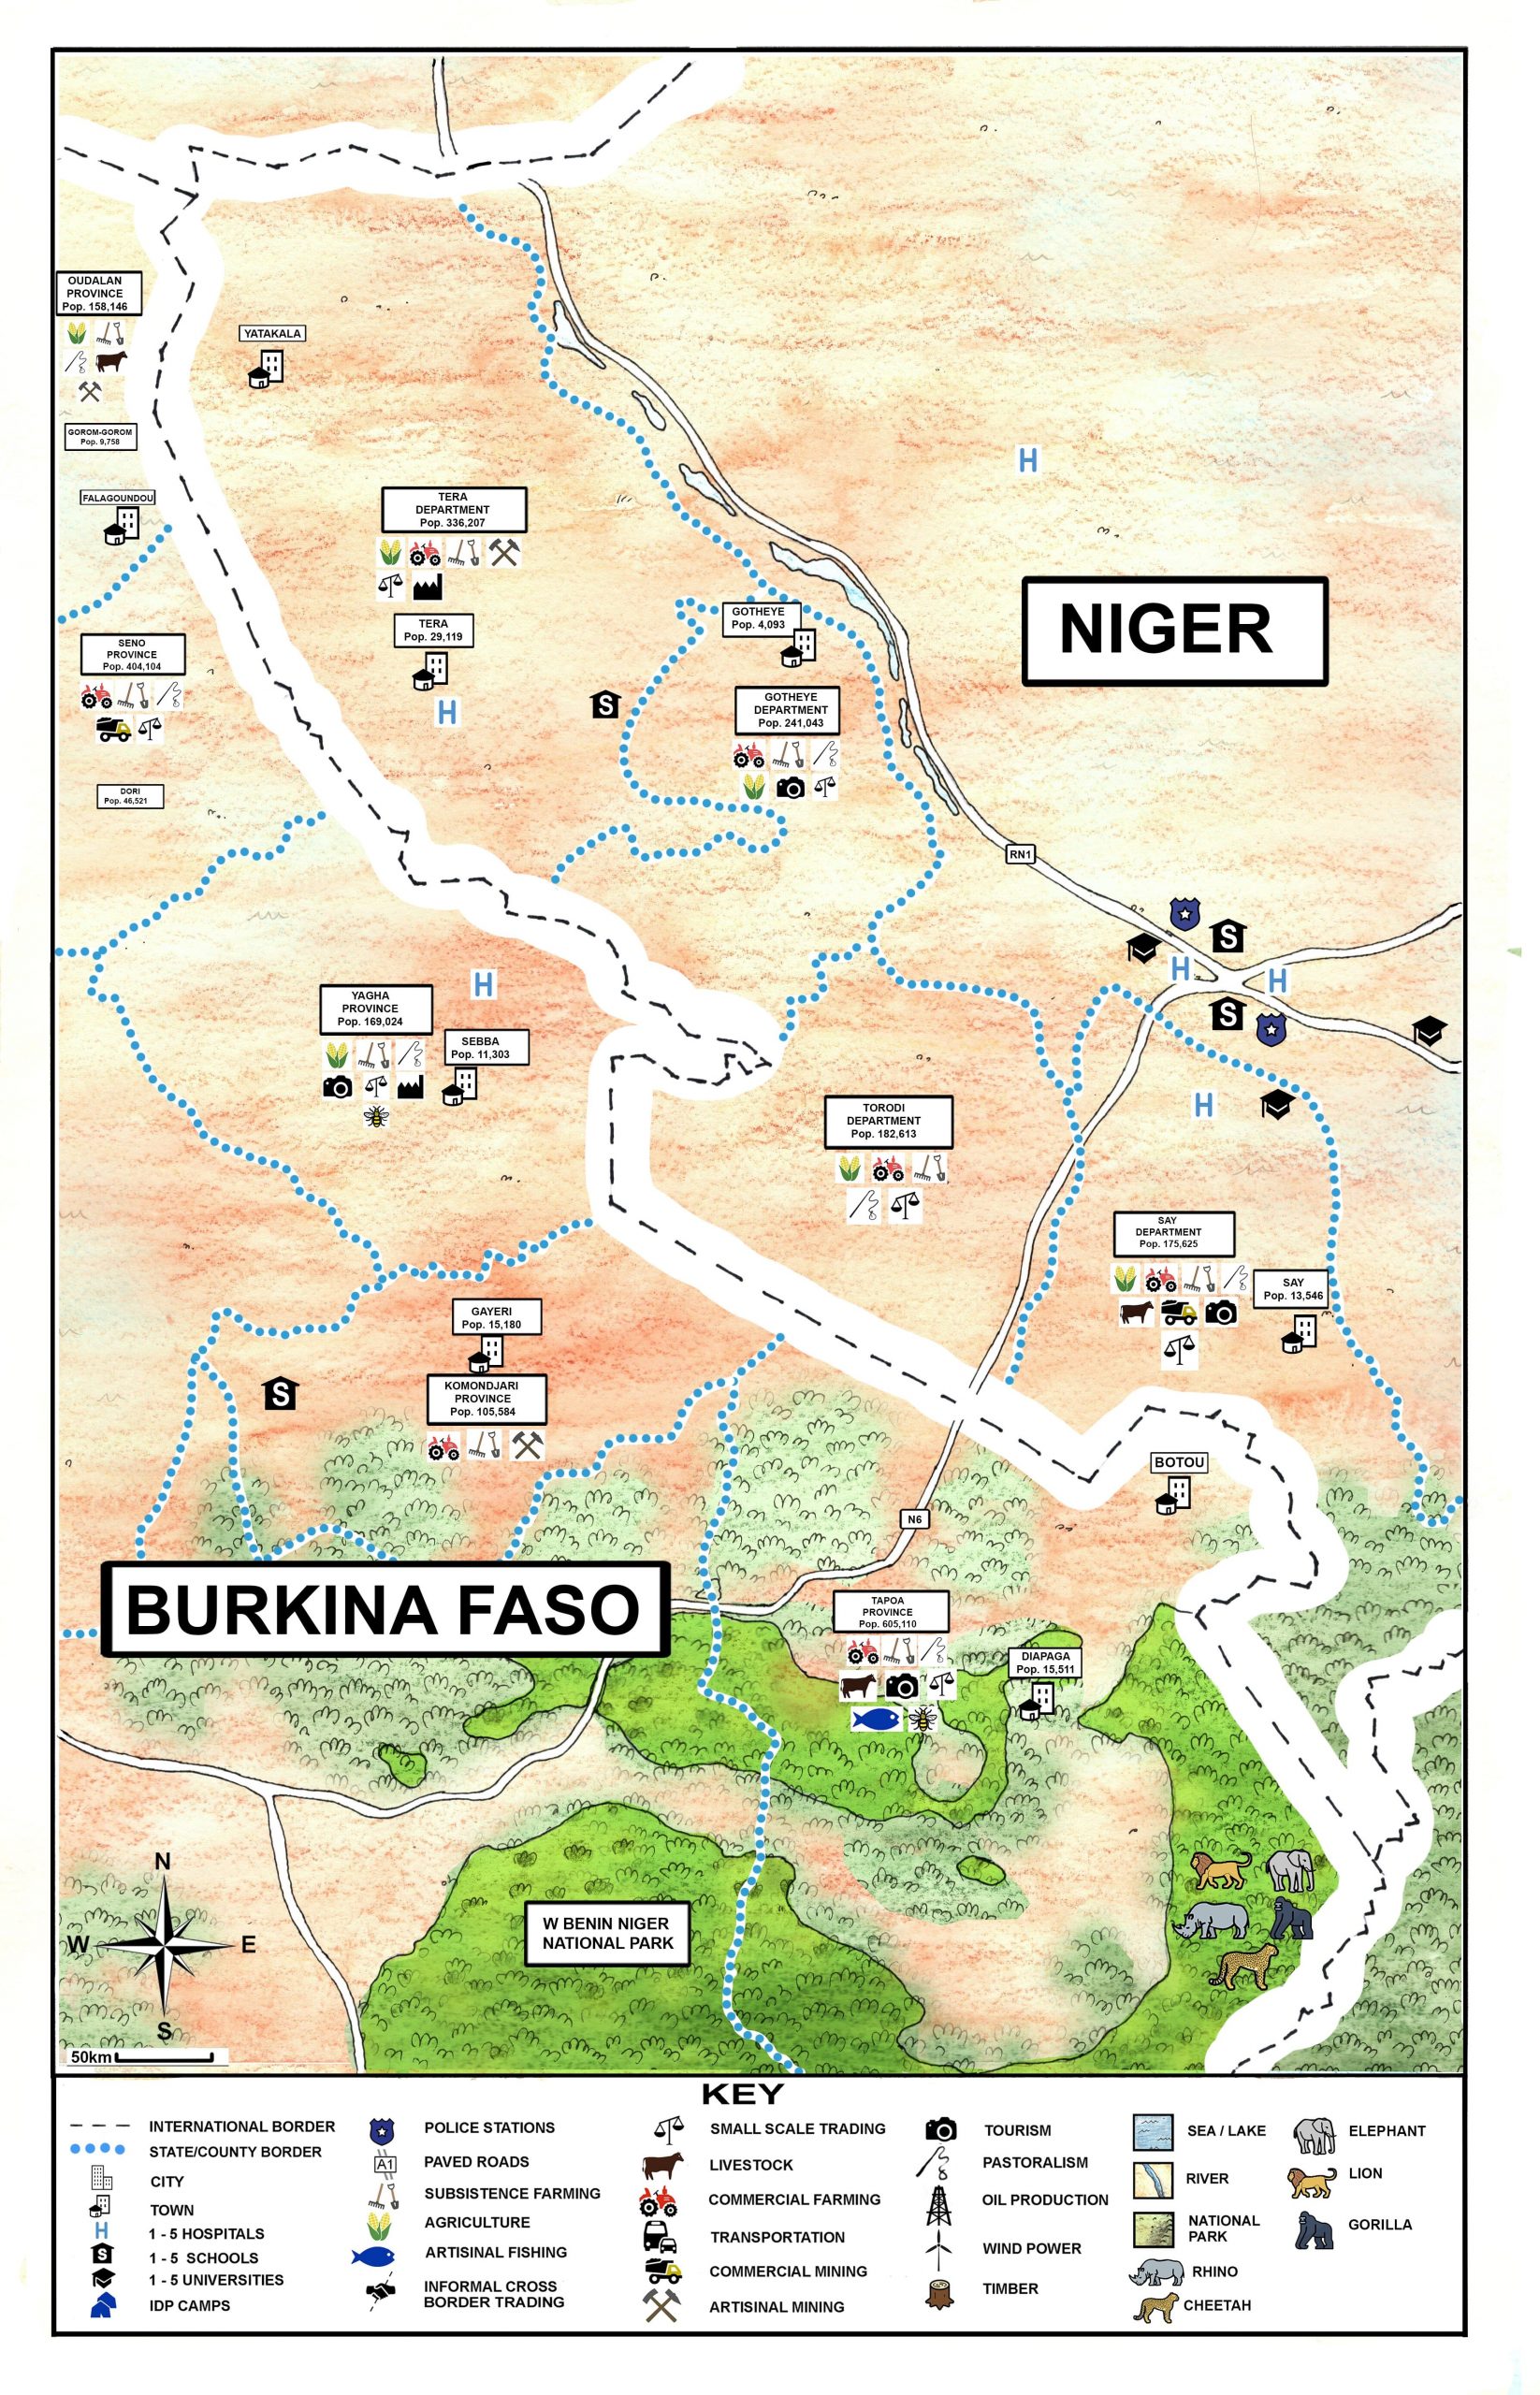 BURKINA FASO - NIGER_illustration